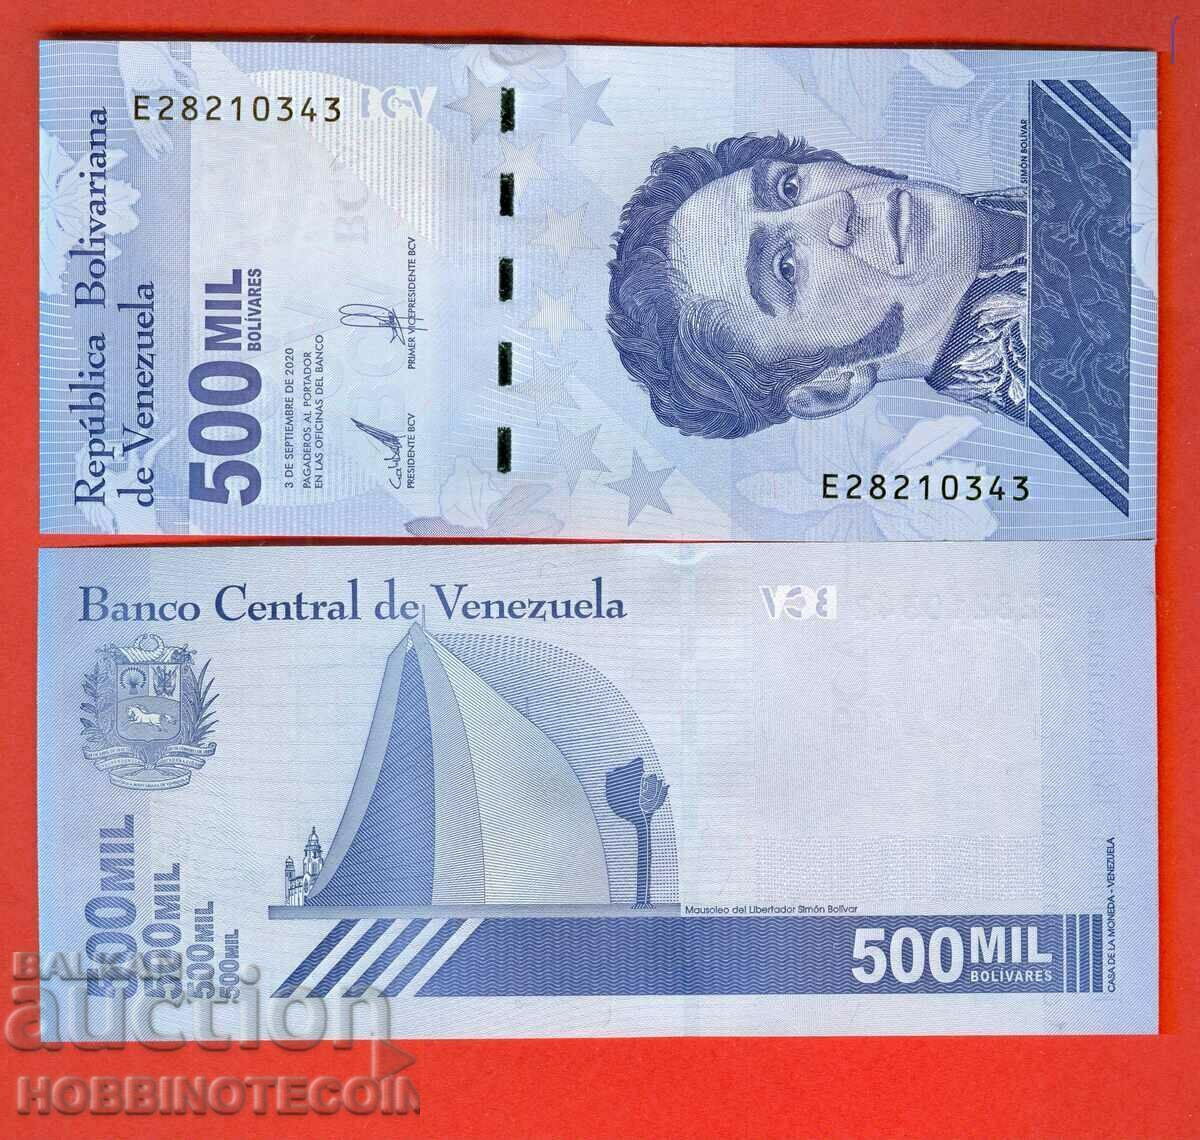 VENEZUELA VENEZUELA 500 000 500000 număr 2020 2021 NOU UNC